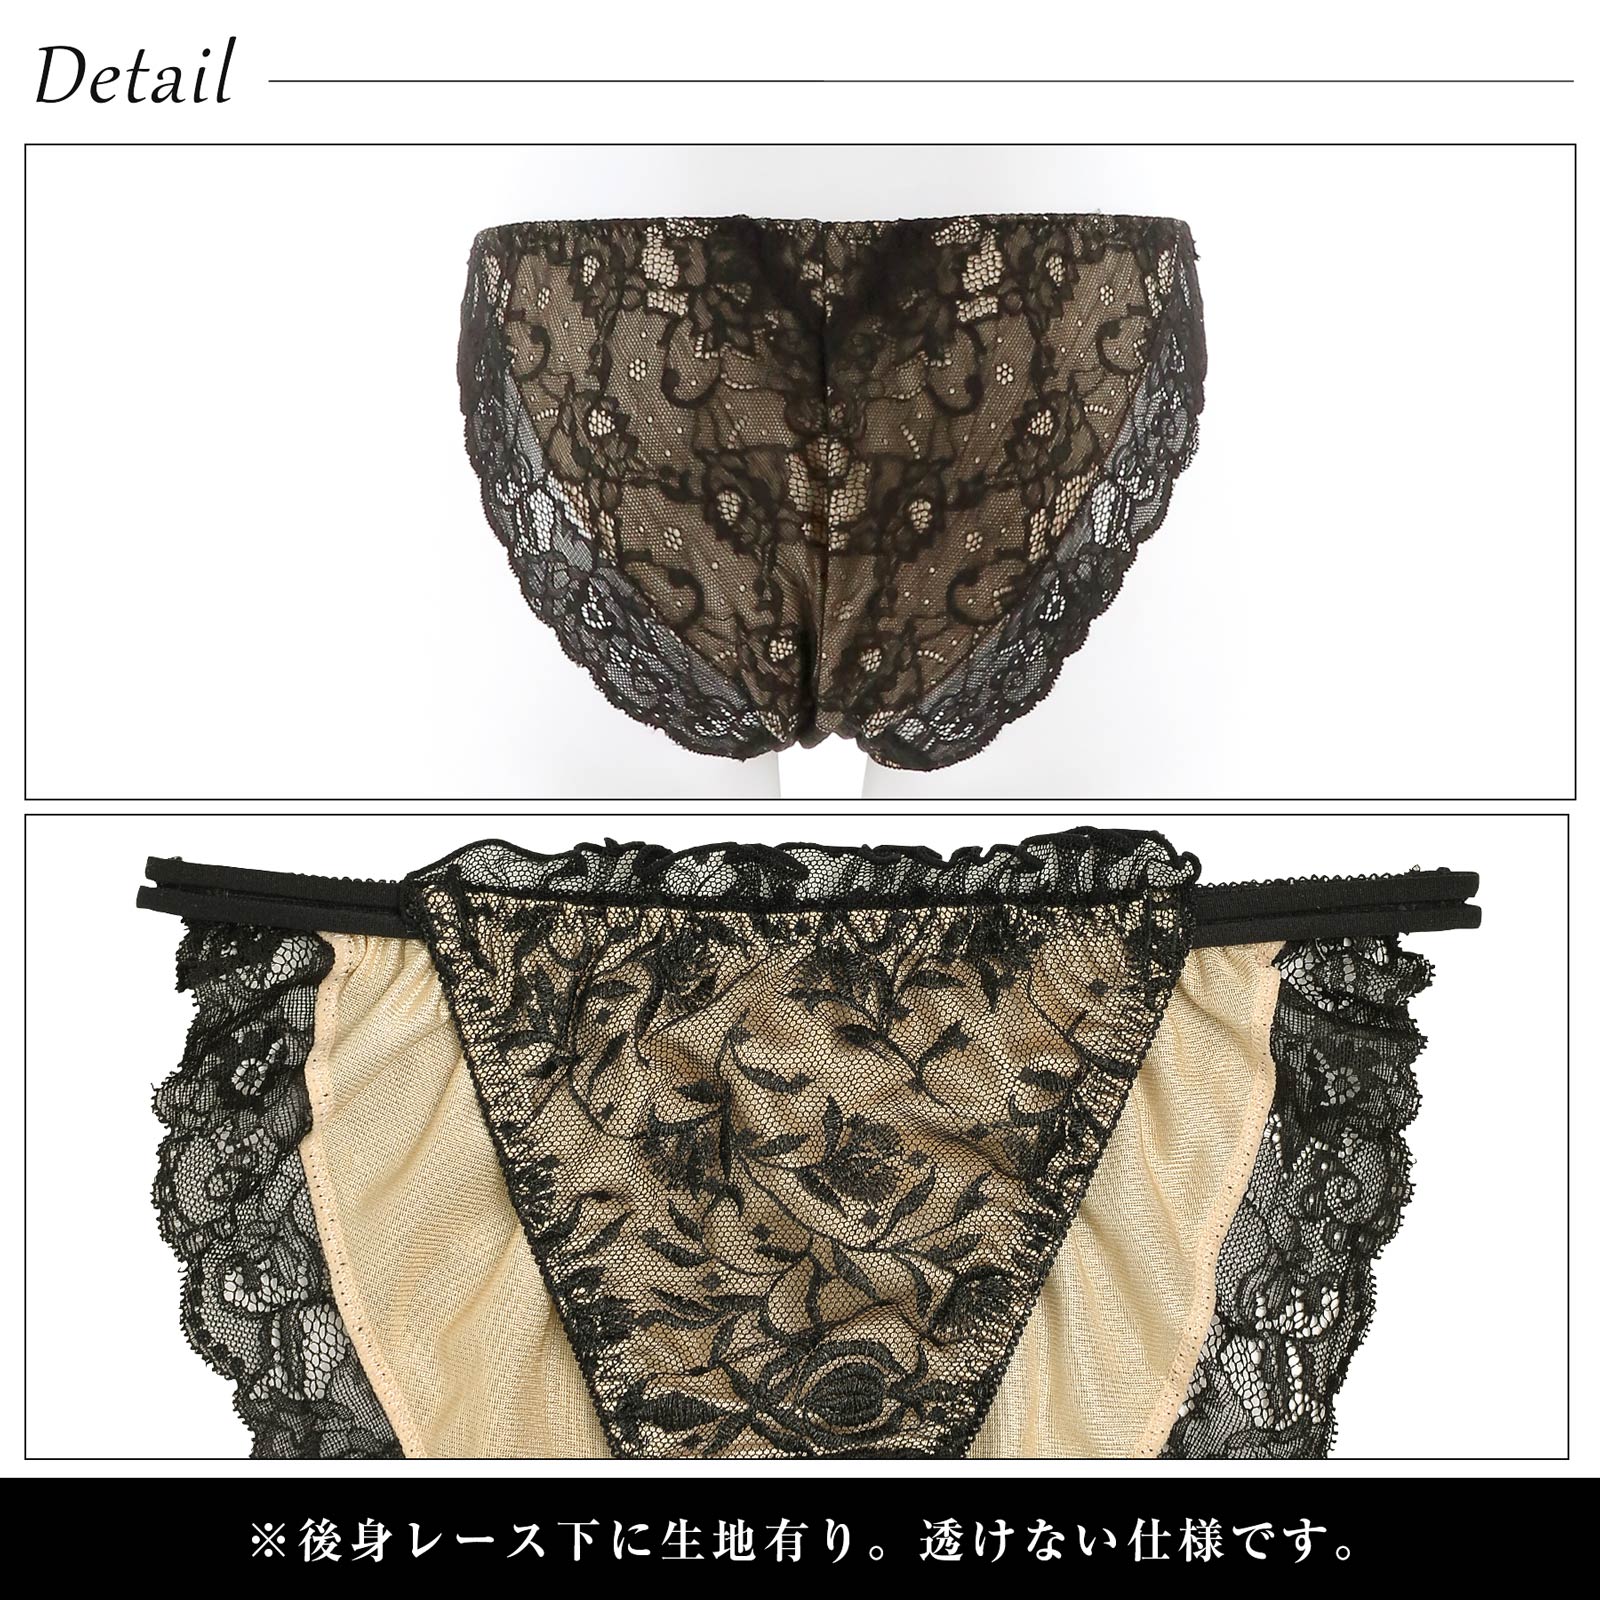 8/11新作!【吉木千沙都(ちぃぽぽ)着用/lunangelina】SFloret pattern Tulle Bra&shorts/Black